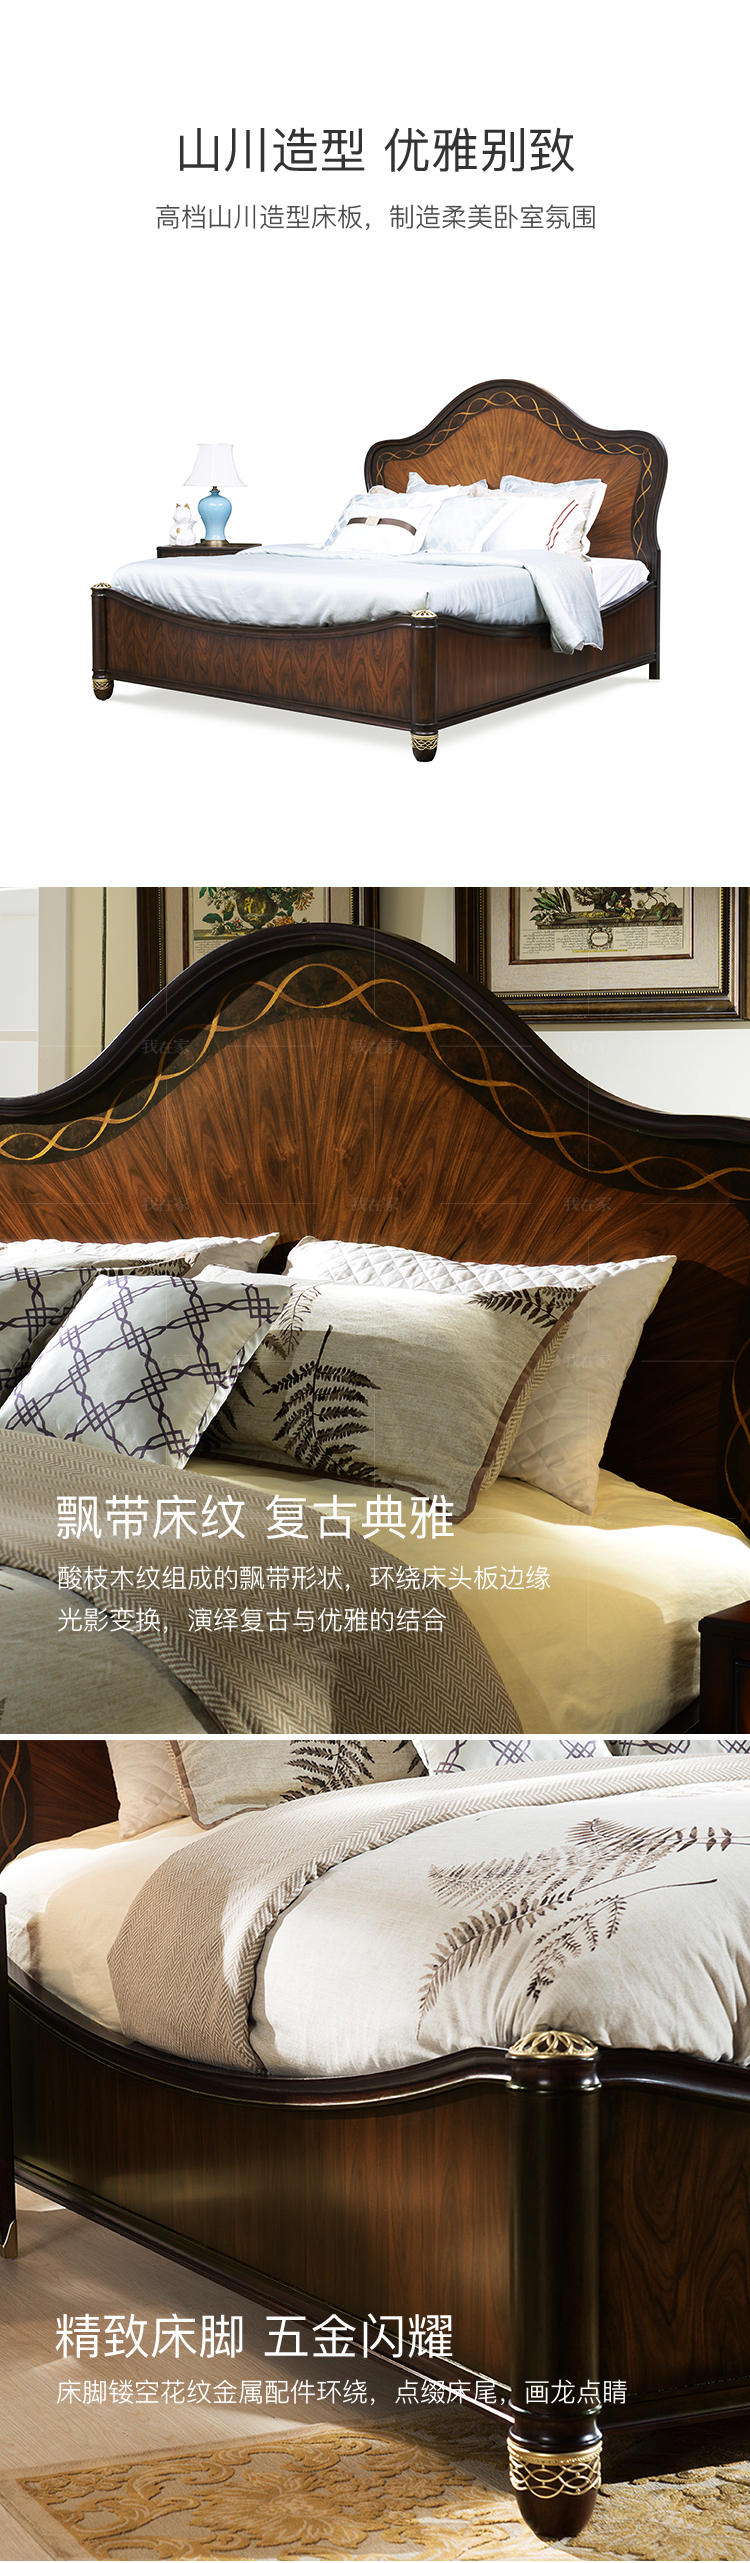 现代美式风格富尔顿板床的家具详细介绍